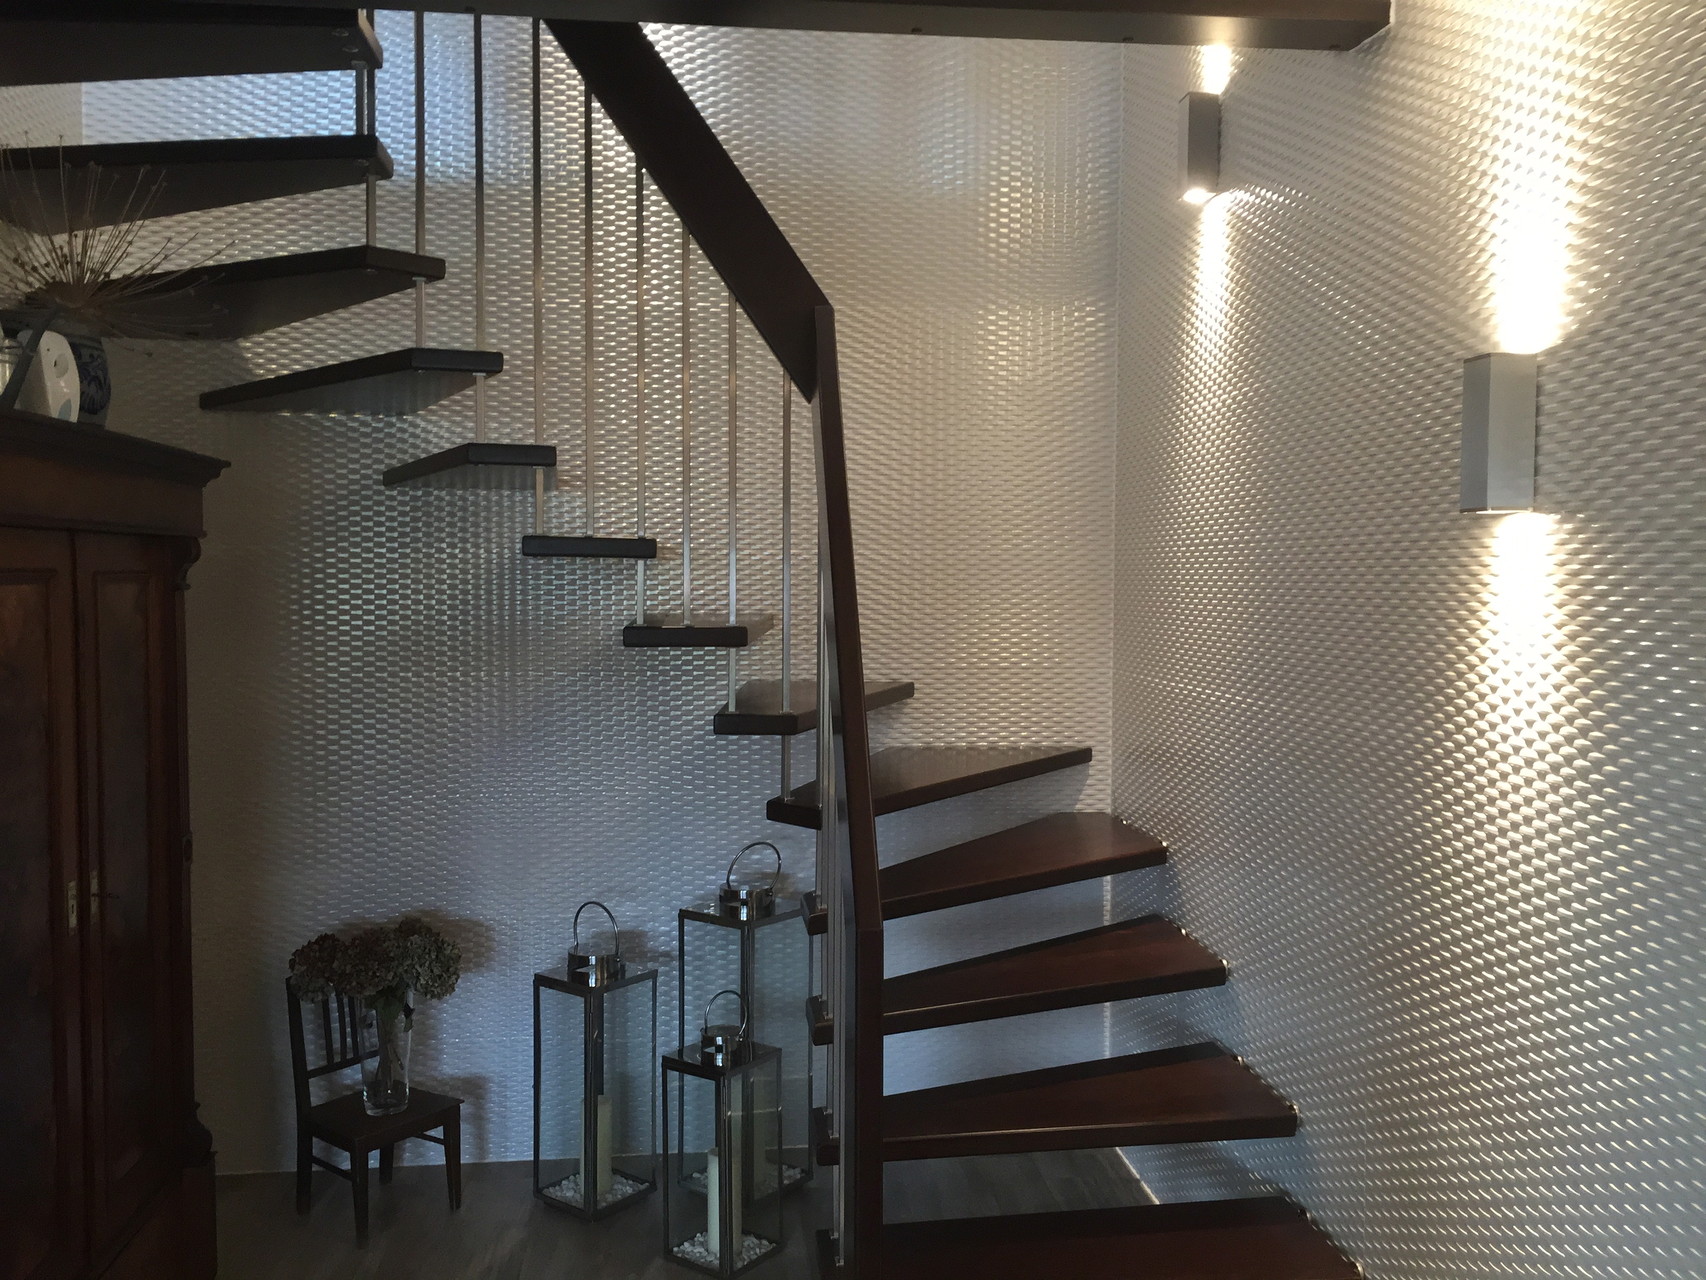 Modernes Treppenhaus mit 3D Fliesen an den Wänden